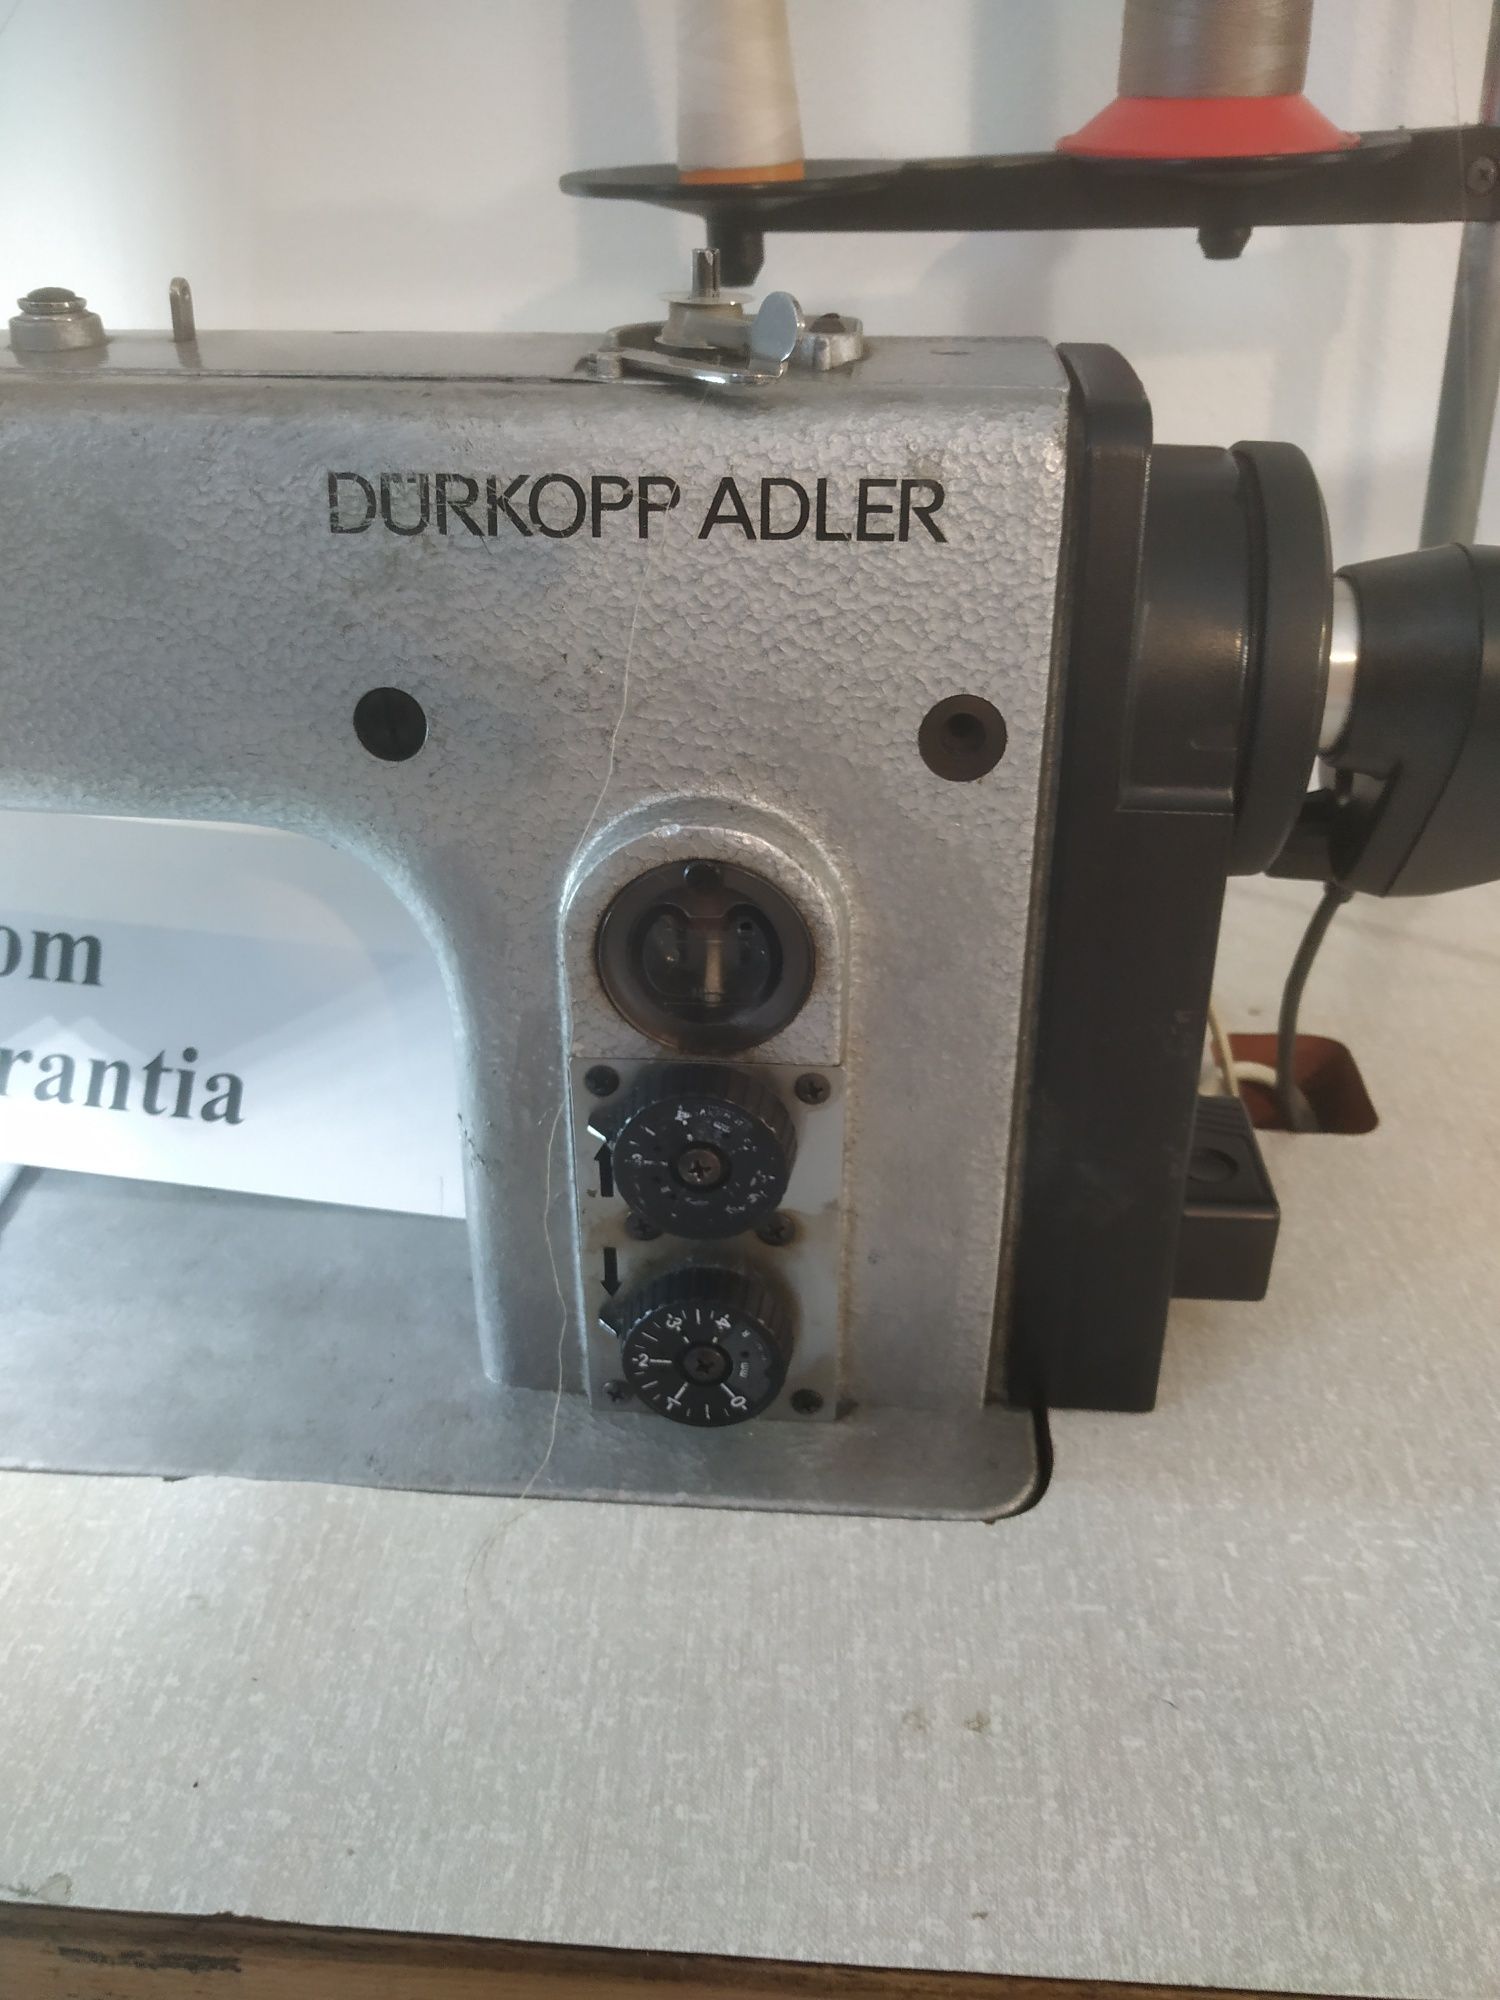 Máquina de costura durkopp Adler muito bom estado.